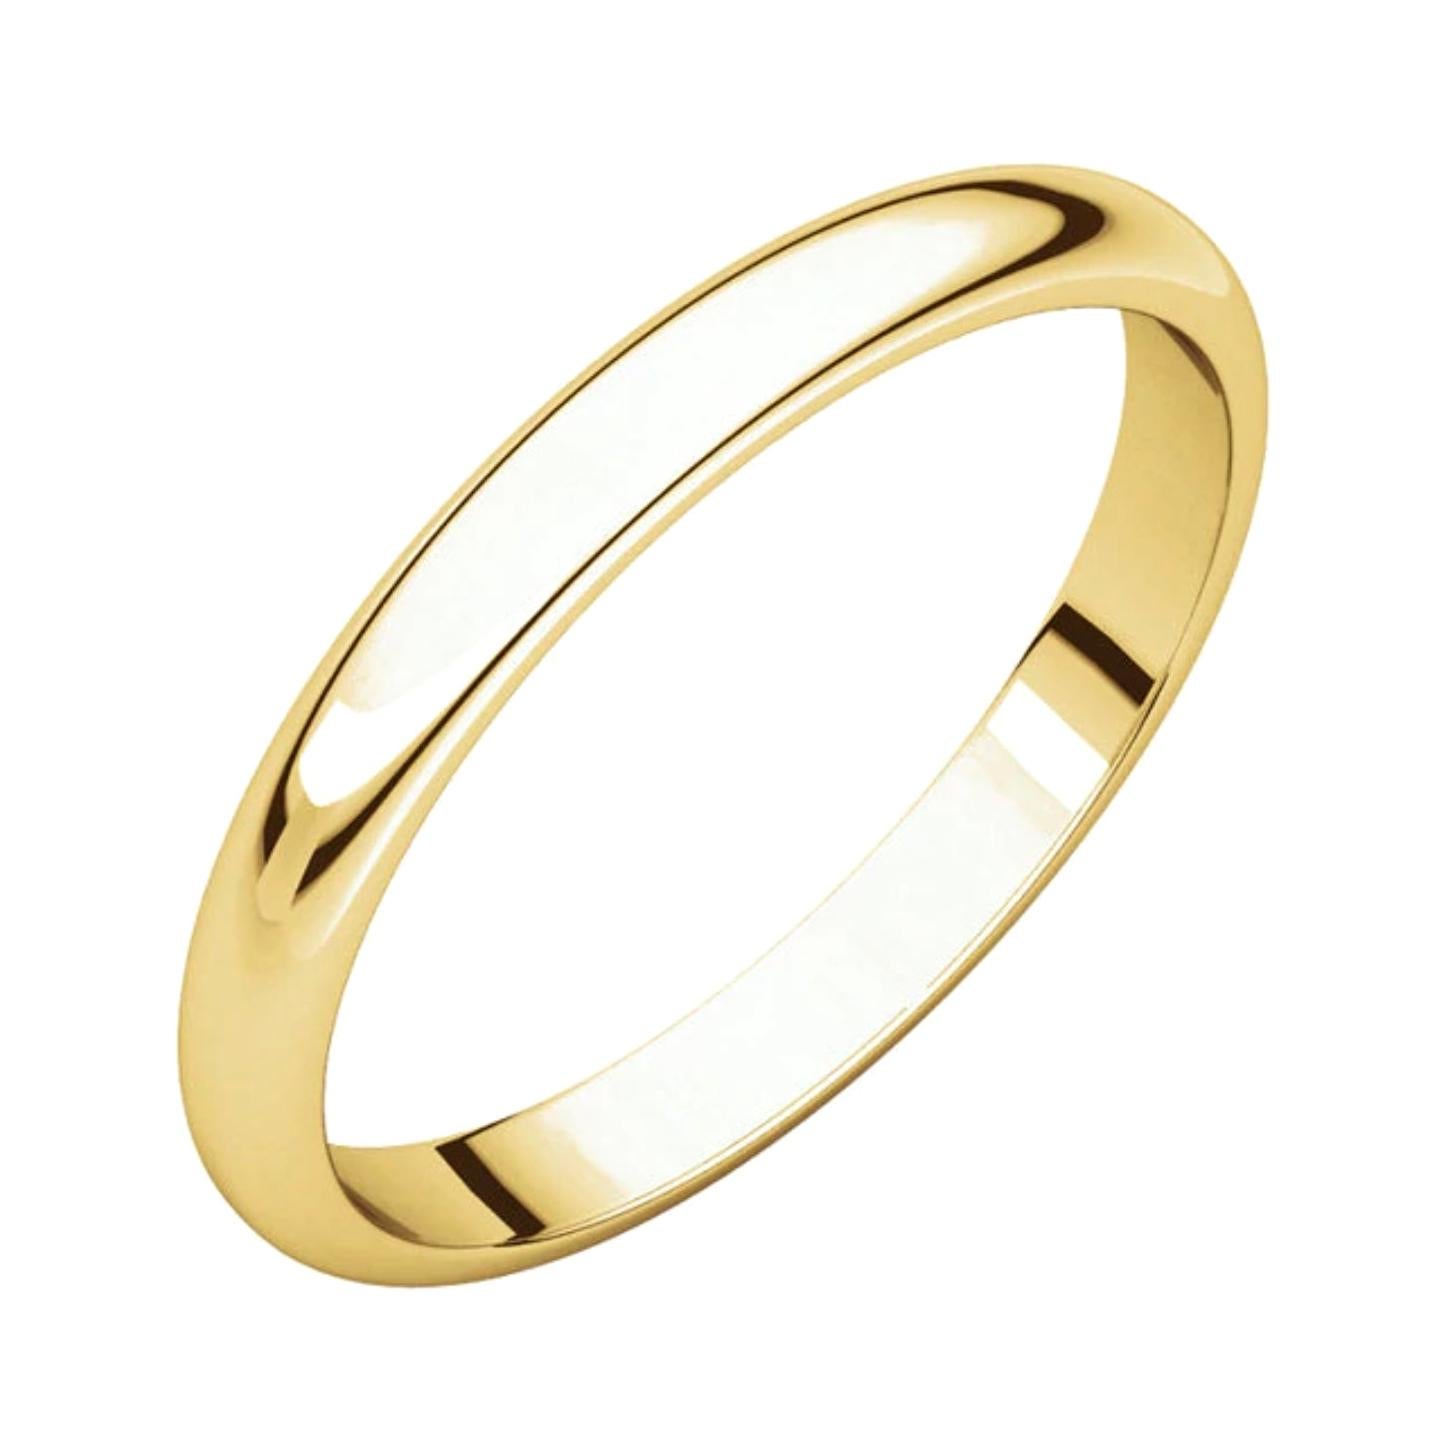 Alliance classique en or jaune 14 carats avec demi-anneau rond, paire de bagues en or massif